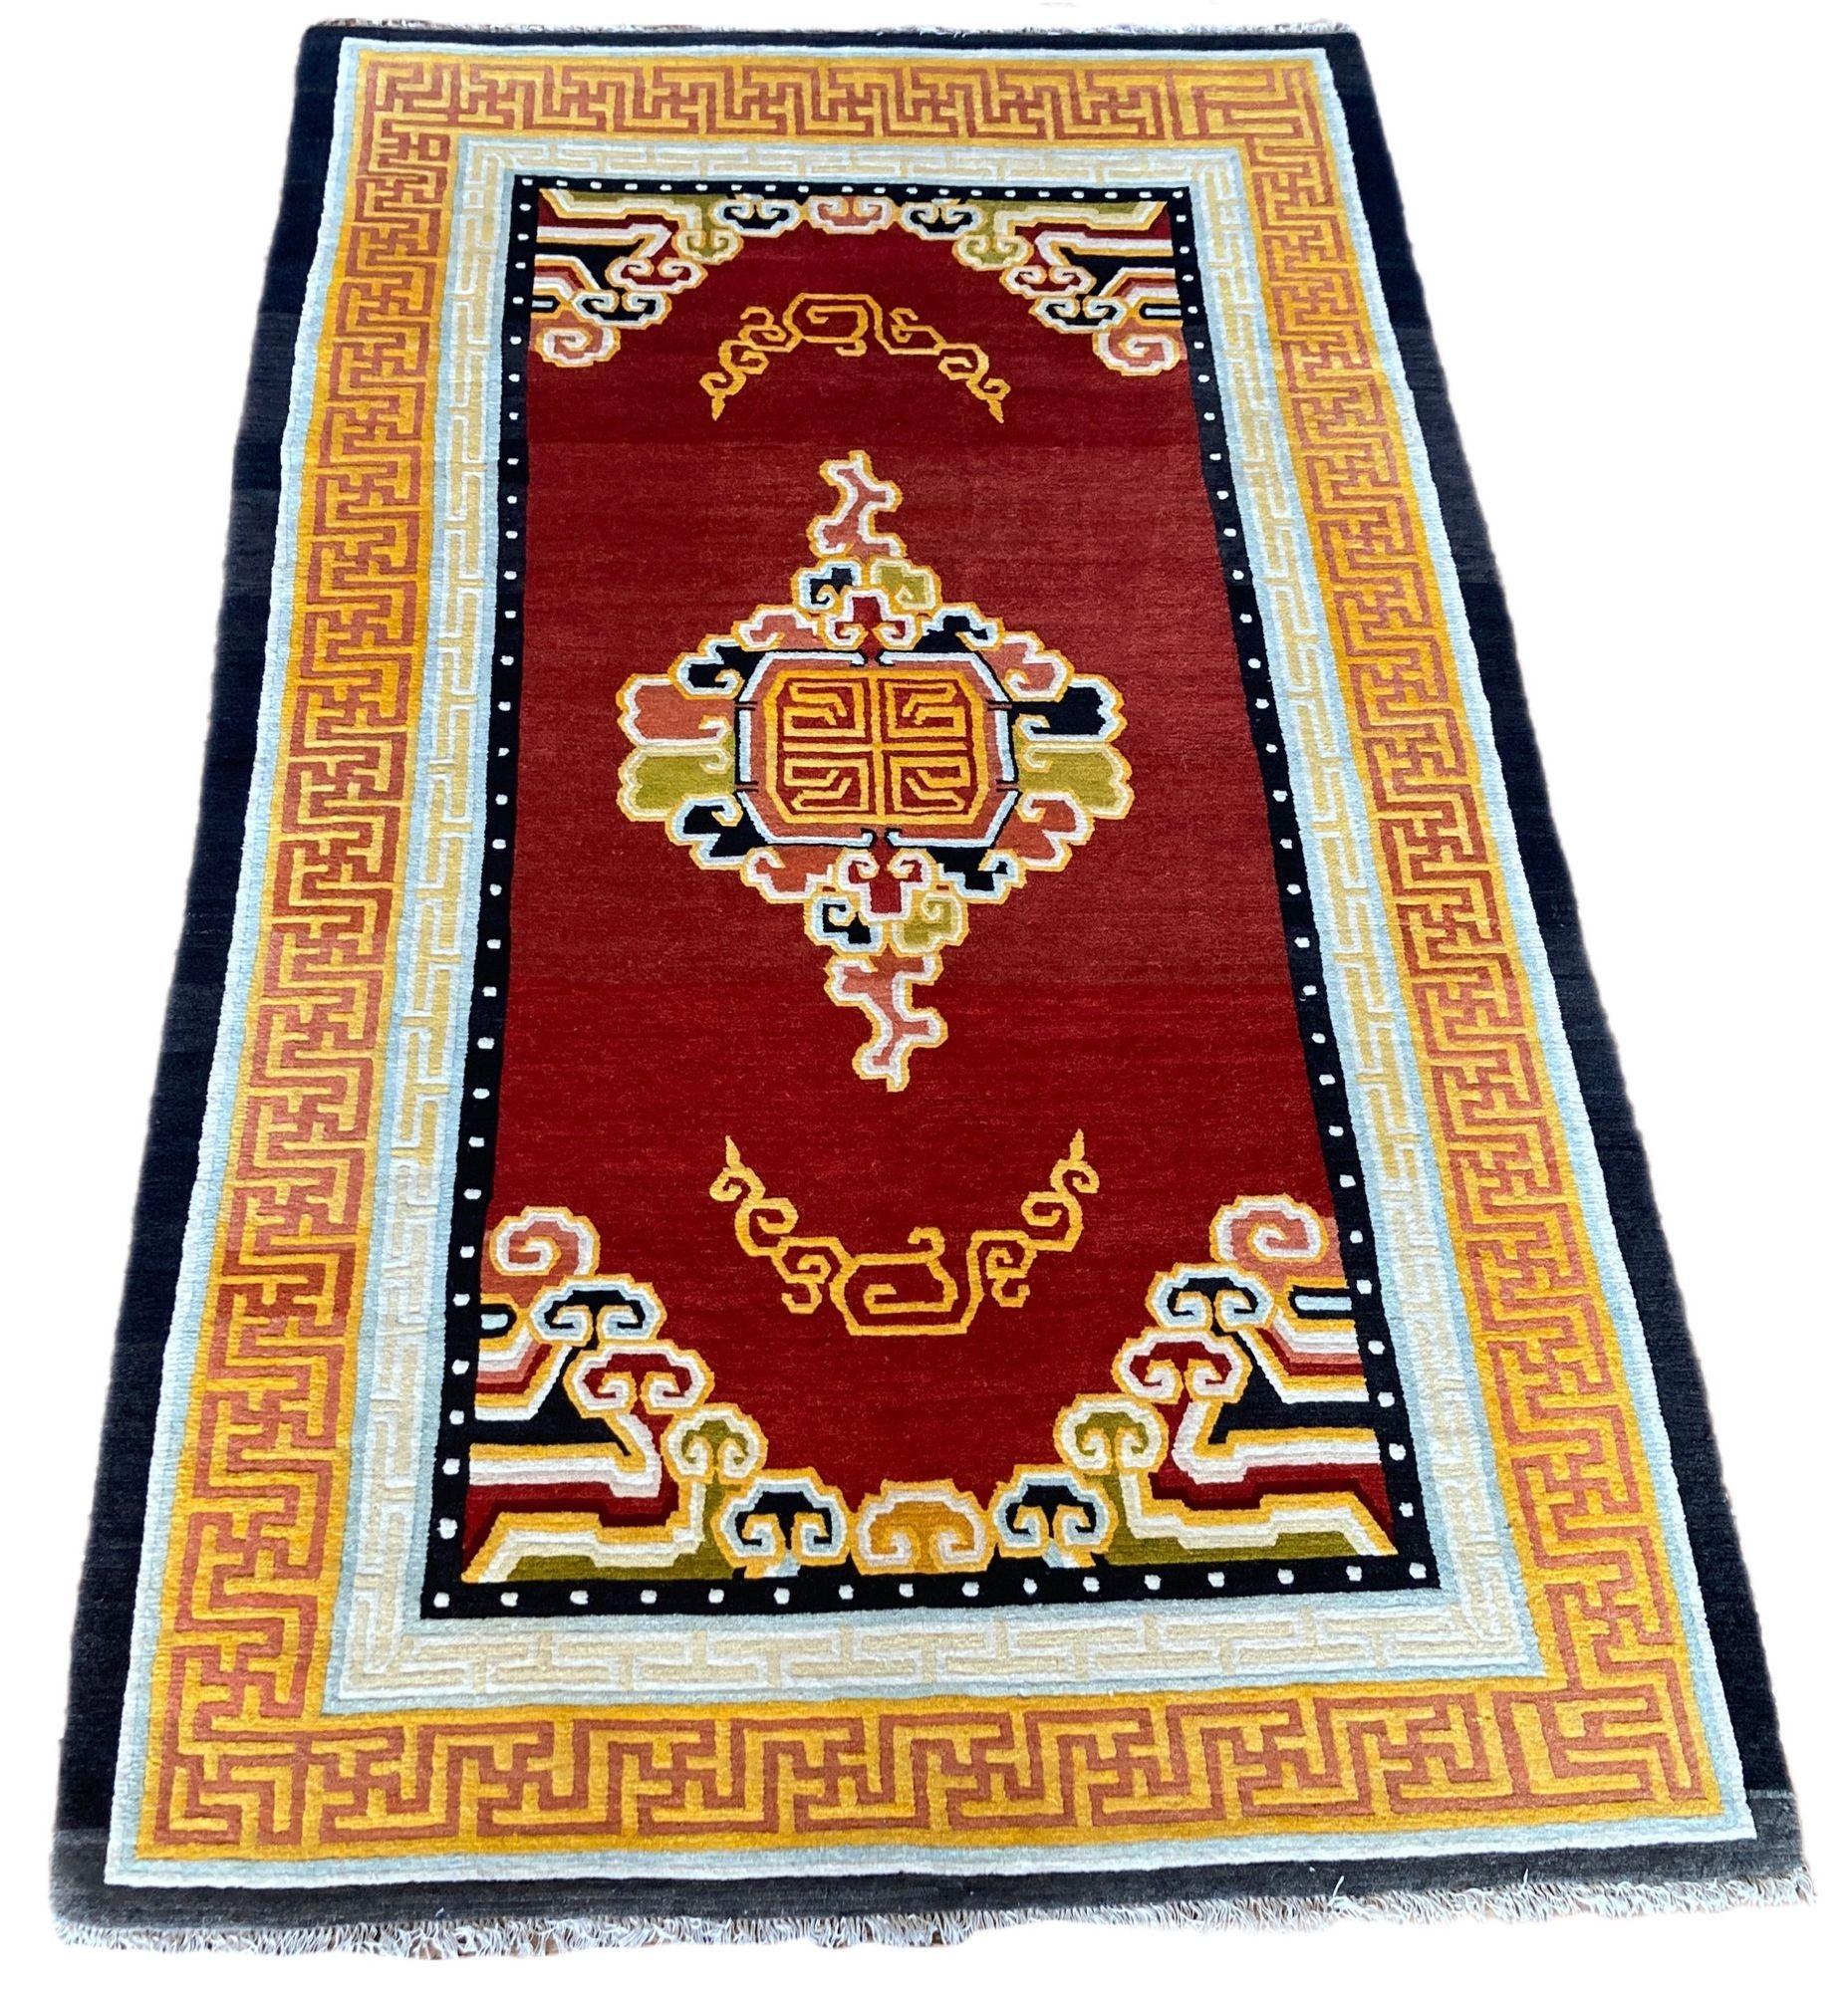 Ein fabelhafter Tibet-Teppich aus den 1930er Jahren mit einem einfachen Wolkenband-Muster auf einem offenen roten Feld, umgeben von einer rot-goldenen Schlüssel-Bordüre. Eins von zwei!
Größe: 2,11m x 1,24m (6ft 11in x 4'ft 1in)
Dieser Teppich ist in